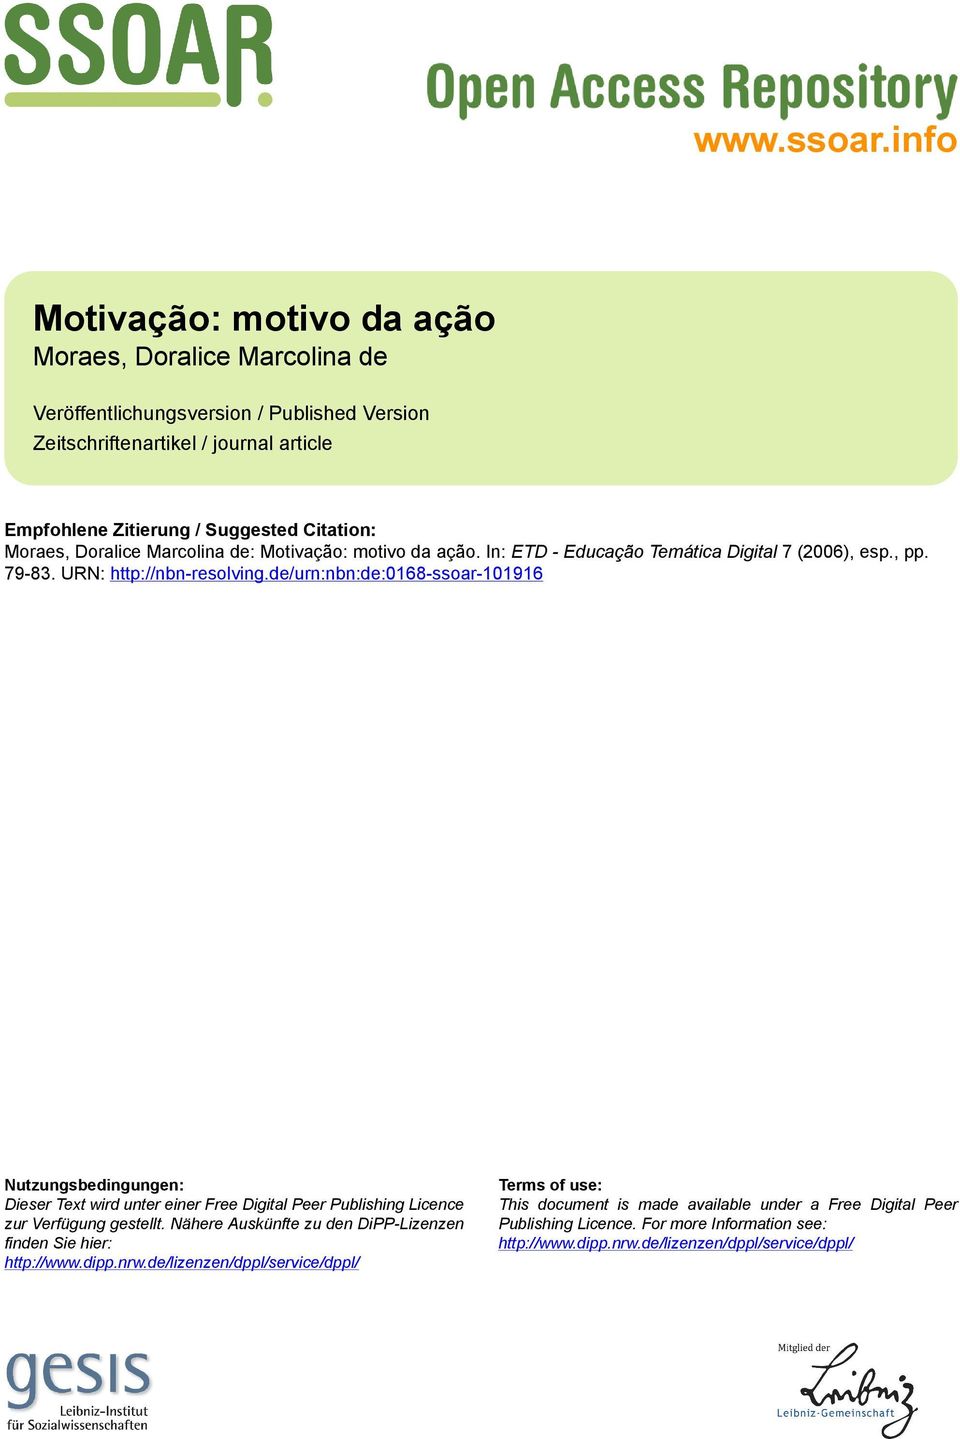 Moraes, Doralice Marcolina de: Motivação: motivo da ação. In: ETD - Educação Temática Digital 7 (2006), esp., pp. 79-83. URN: http://nbn-resolving.